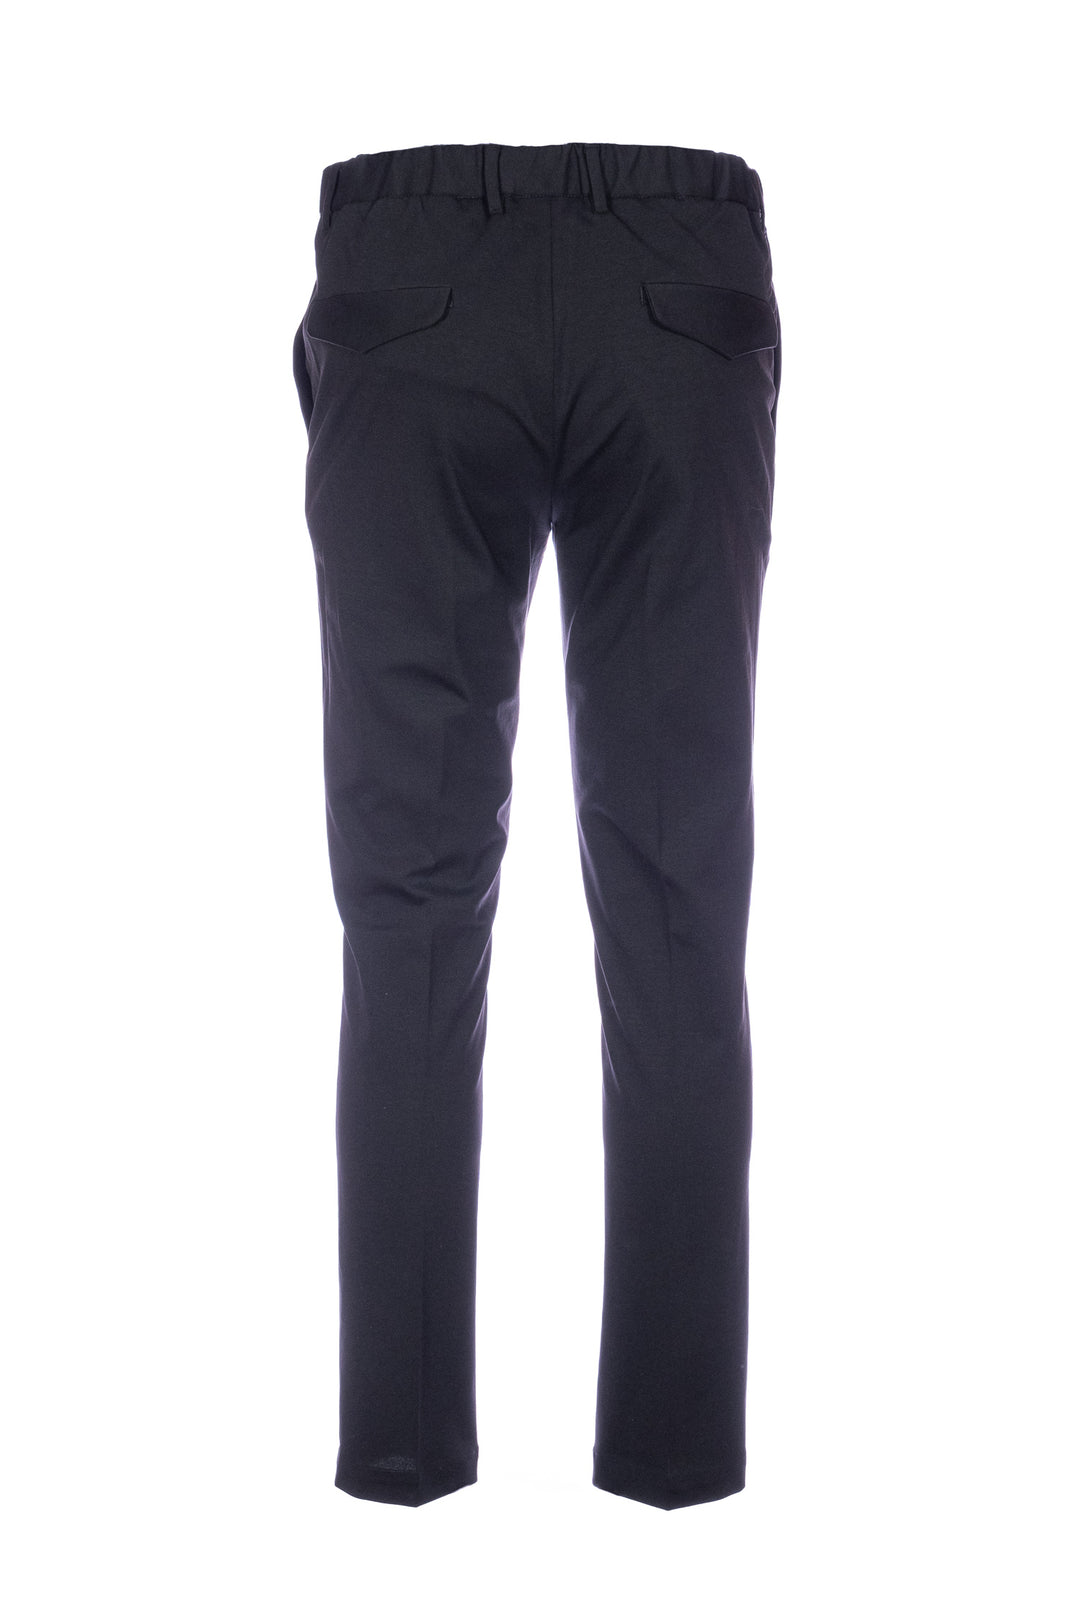 DEVORE Pantalone nero in cotone stretch con vita elastica e una pince - Mancinelli 1954